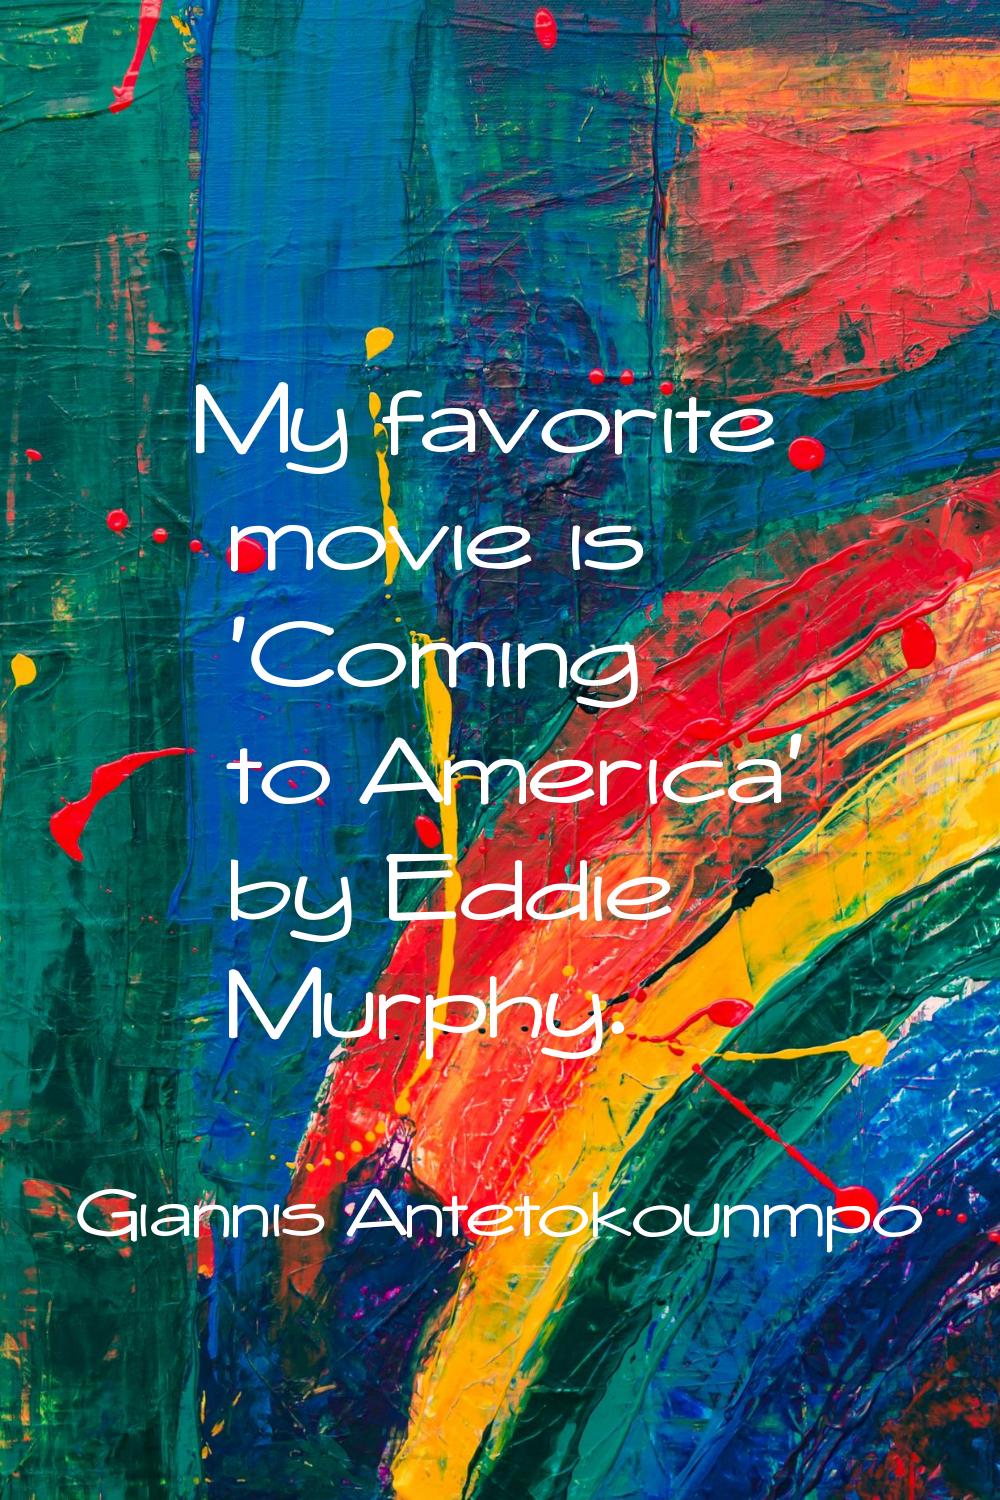 My favorite movie is 'Coming to America' by Eddie Murphy.